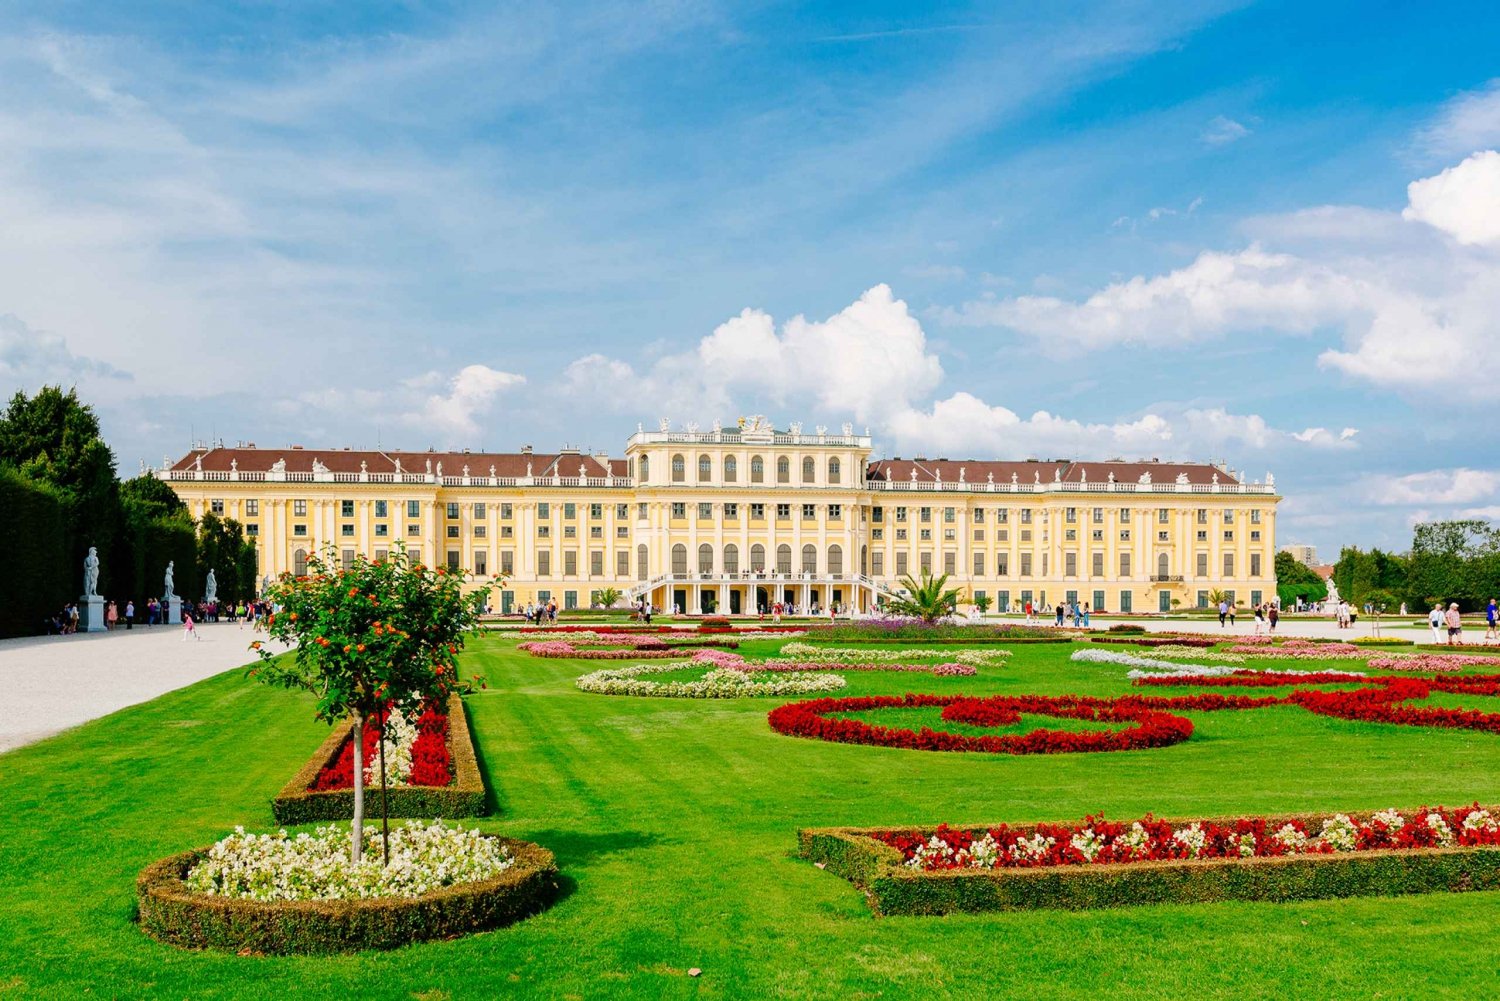 Visit-the-Schonbrunn-Palace-Gardens